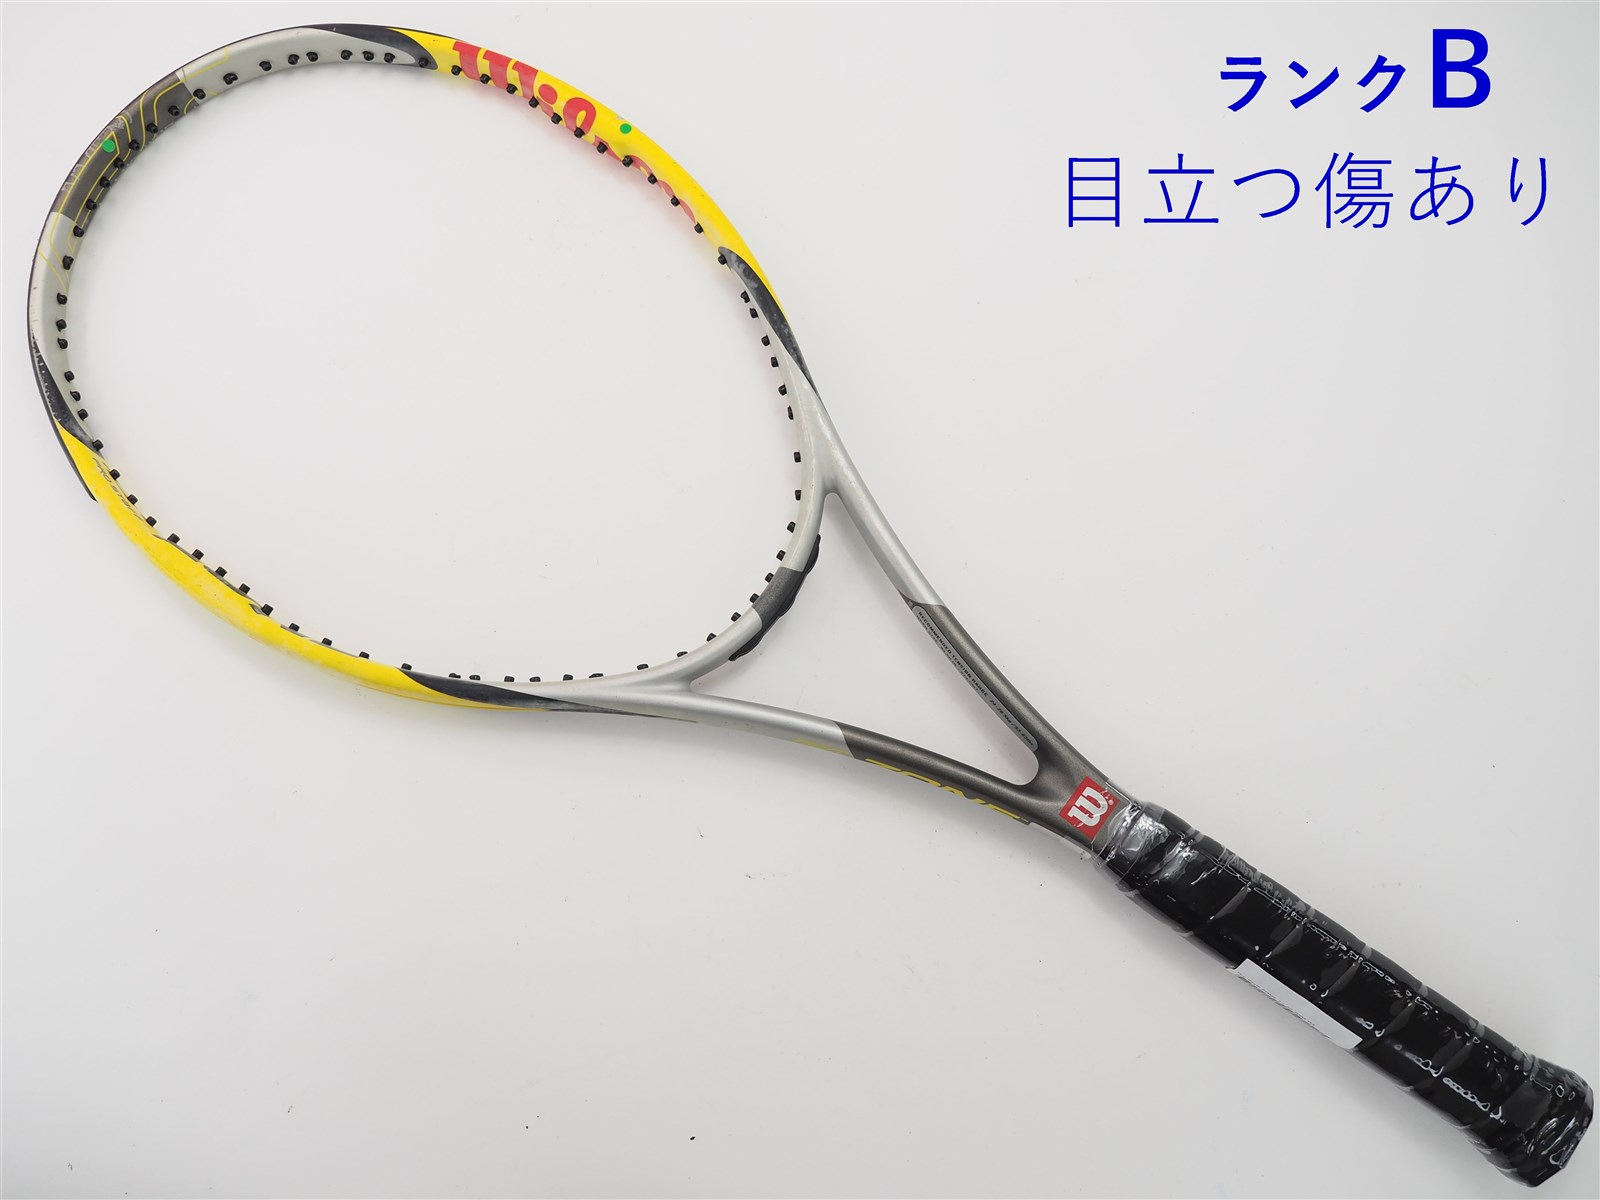 テニスラケット ウィルソン プロ スタッフ ゾーン 7.1 95 (G3)WILSON